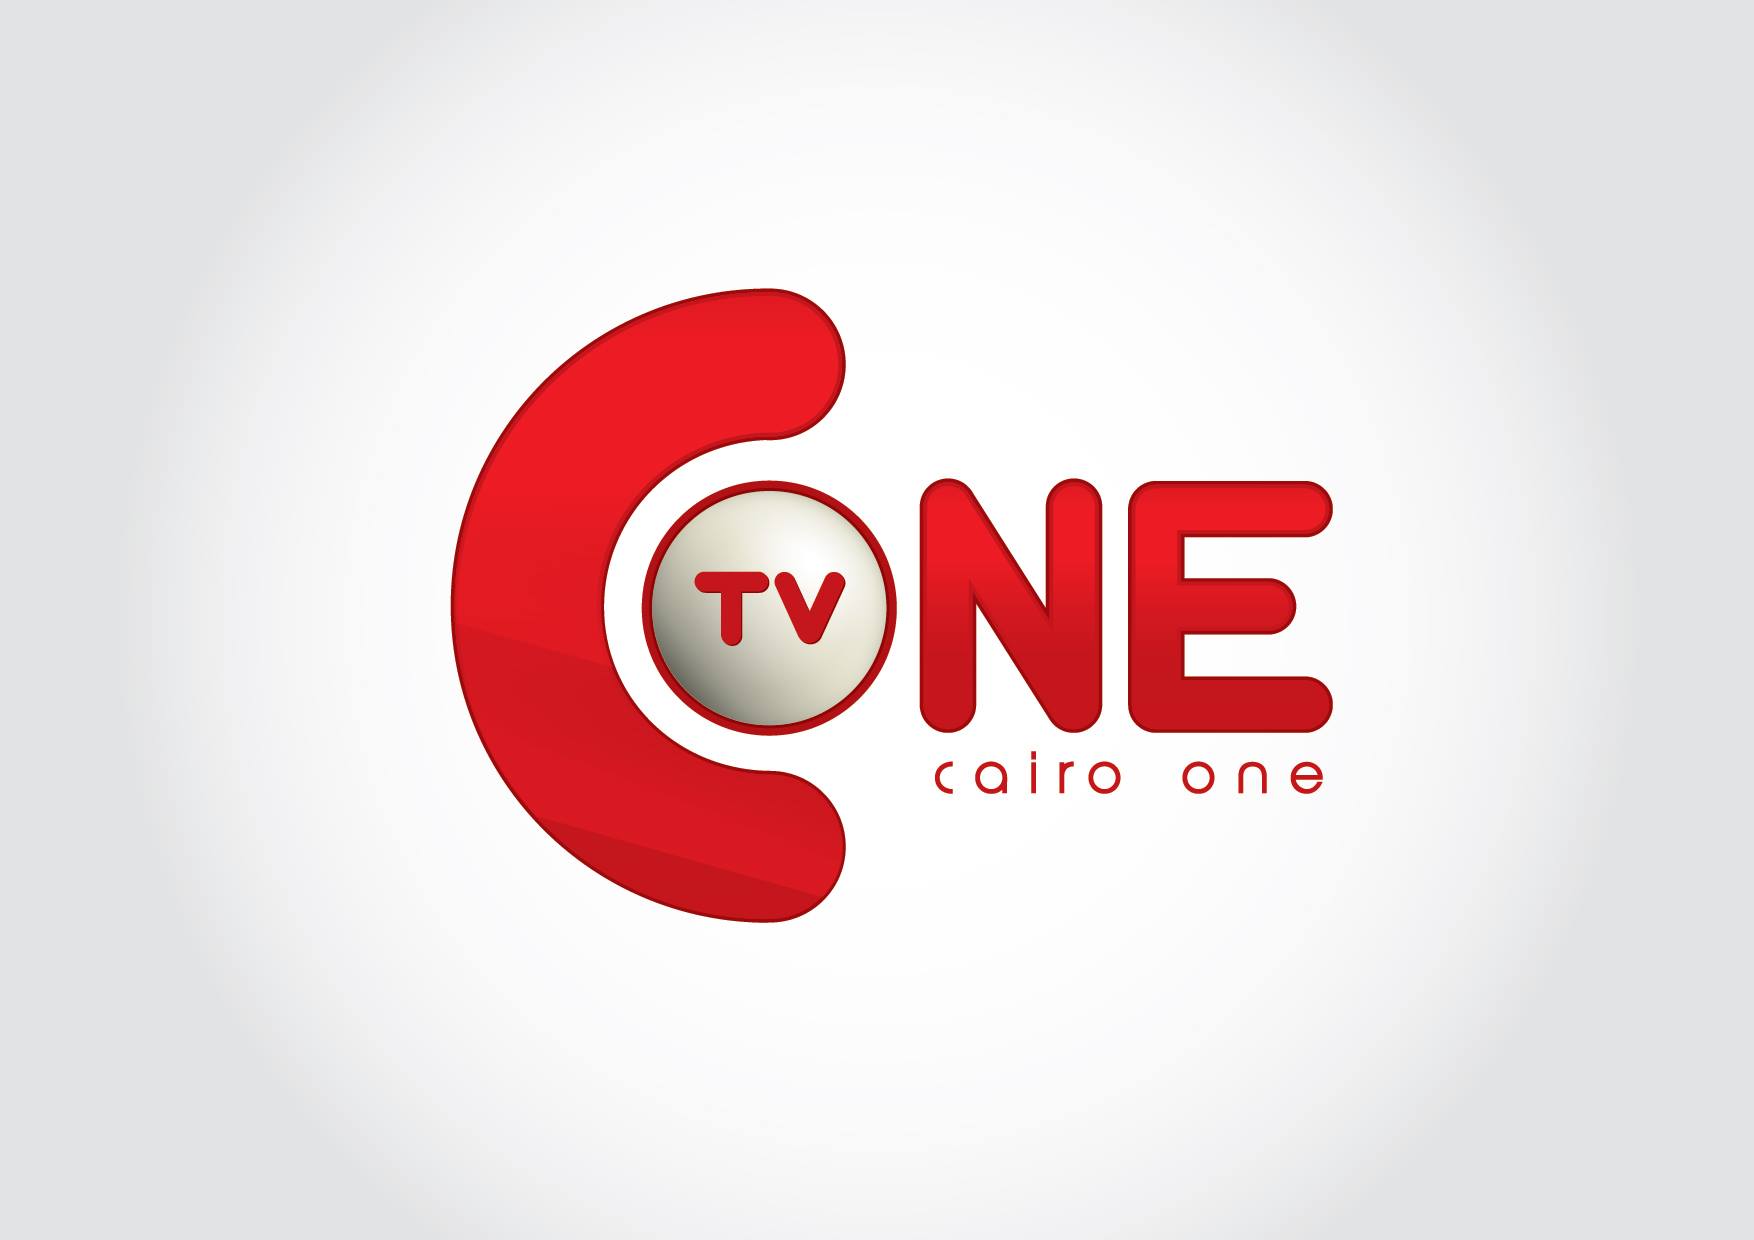      CAIRO ONE TV 